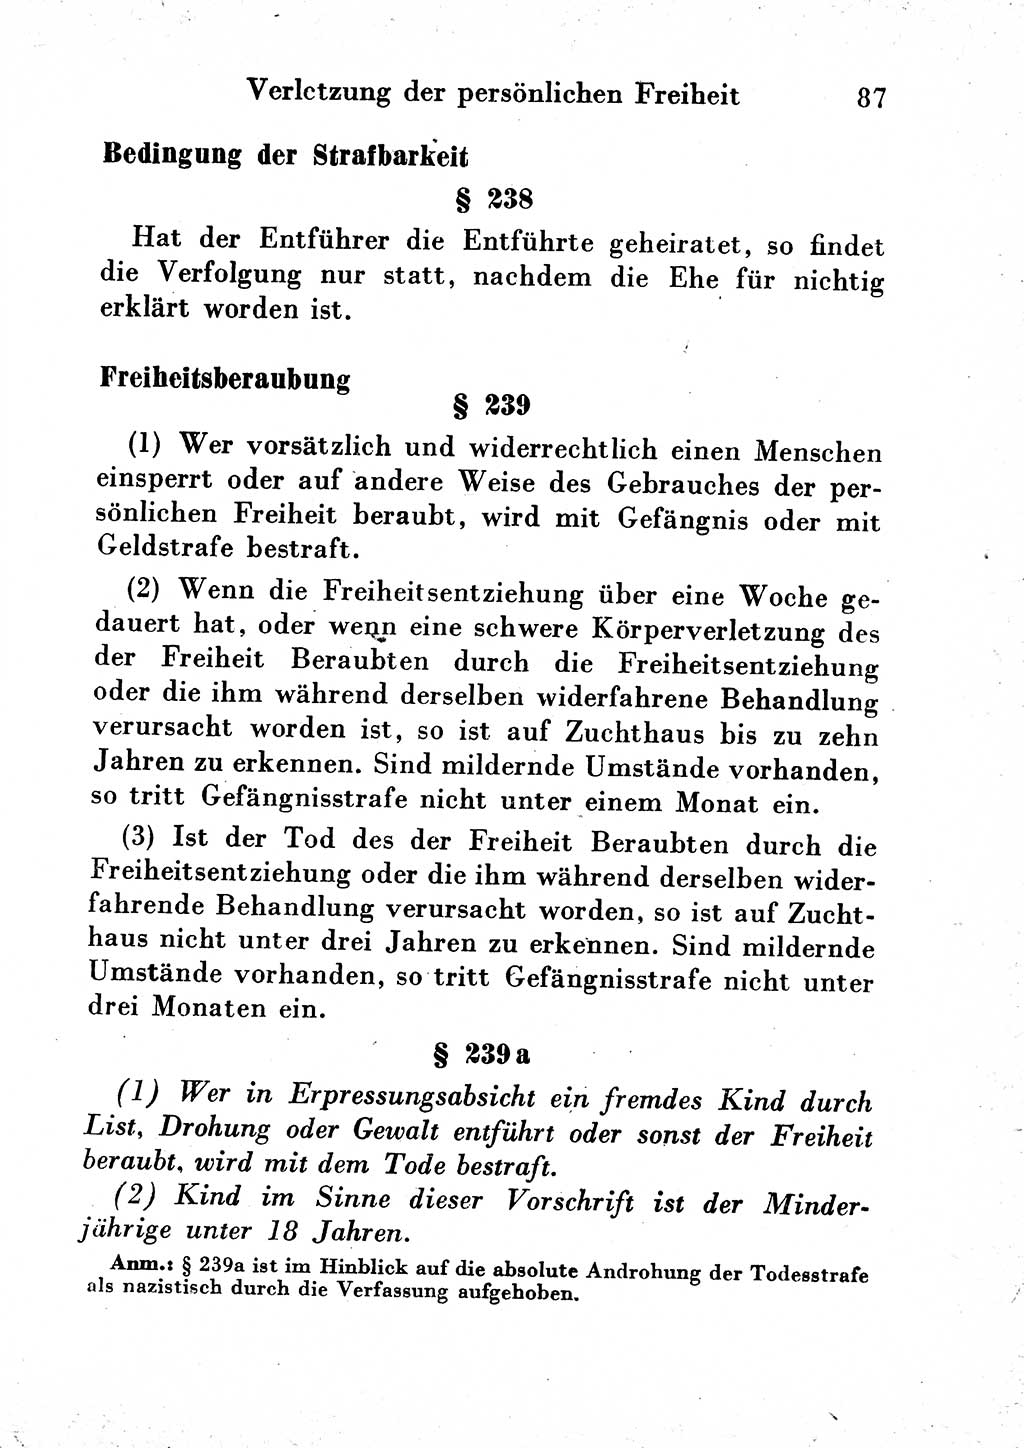 Strafgesetzbuch (StGB) und andere Strafgesetze [Deutsche Demokratische Republik (DDR)] 1954, Seite 87 (StGB Strafges. DDR 1954, S. 87)